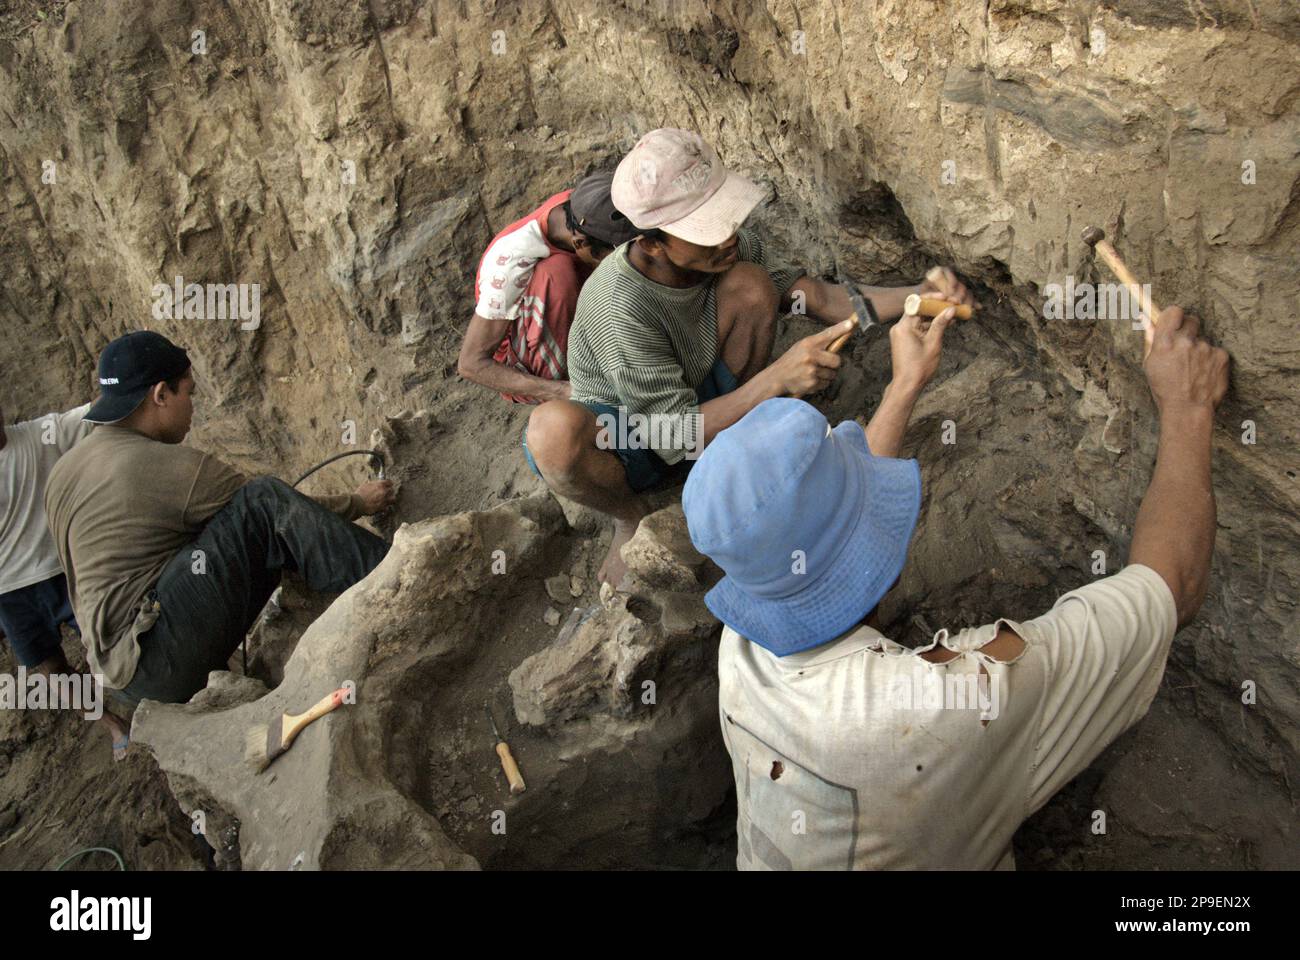 Un paleontologo sta lavorando con gli abitanti del villaggio sullo scavo di ossa fossilizzate di una specie di elefante estinto scientificamente identificata come Elephas hysudrindicus, o popolarmente chiamata 'elefante di Blora', in Sunggun, Mendalem, Kradenan, Blora, Giava centrale, Indonesia. Il team di scienziati dalla ricerca di vertebrati (Agenzia Geologica, Ministero indonesiano dell'energia e delle risorse minerali) guidato da Iwan Kurniawan e Fachroel Aziz ha scoperto le ossa della specie quasi interamente (circa il 90 per cento completo) che in seguito avrebbe permesso loro di costruire una ricostruzione scientifica, che è esposto a... Foto Stock